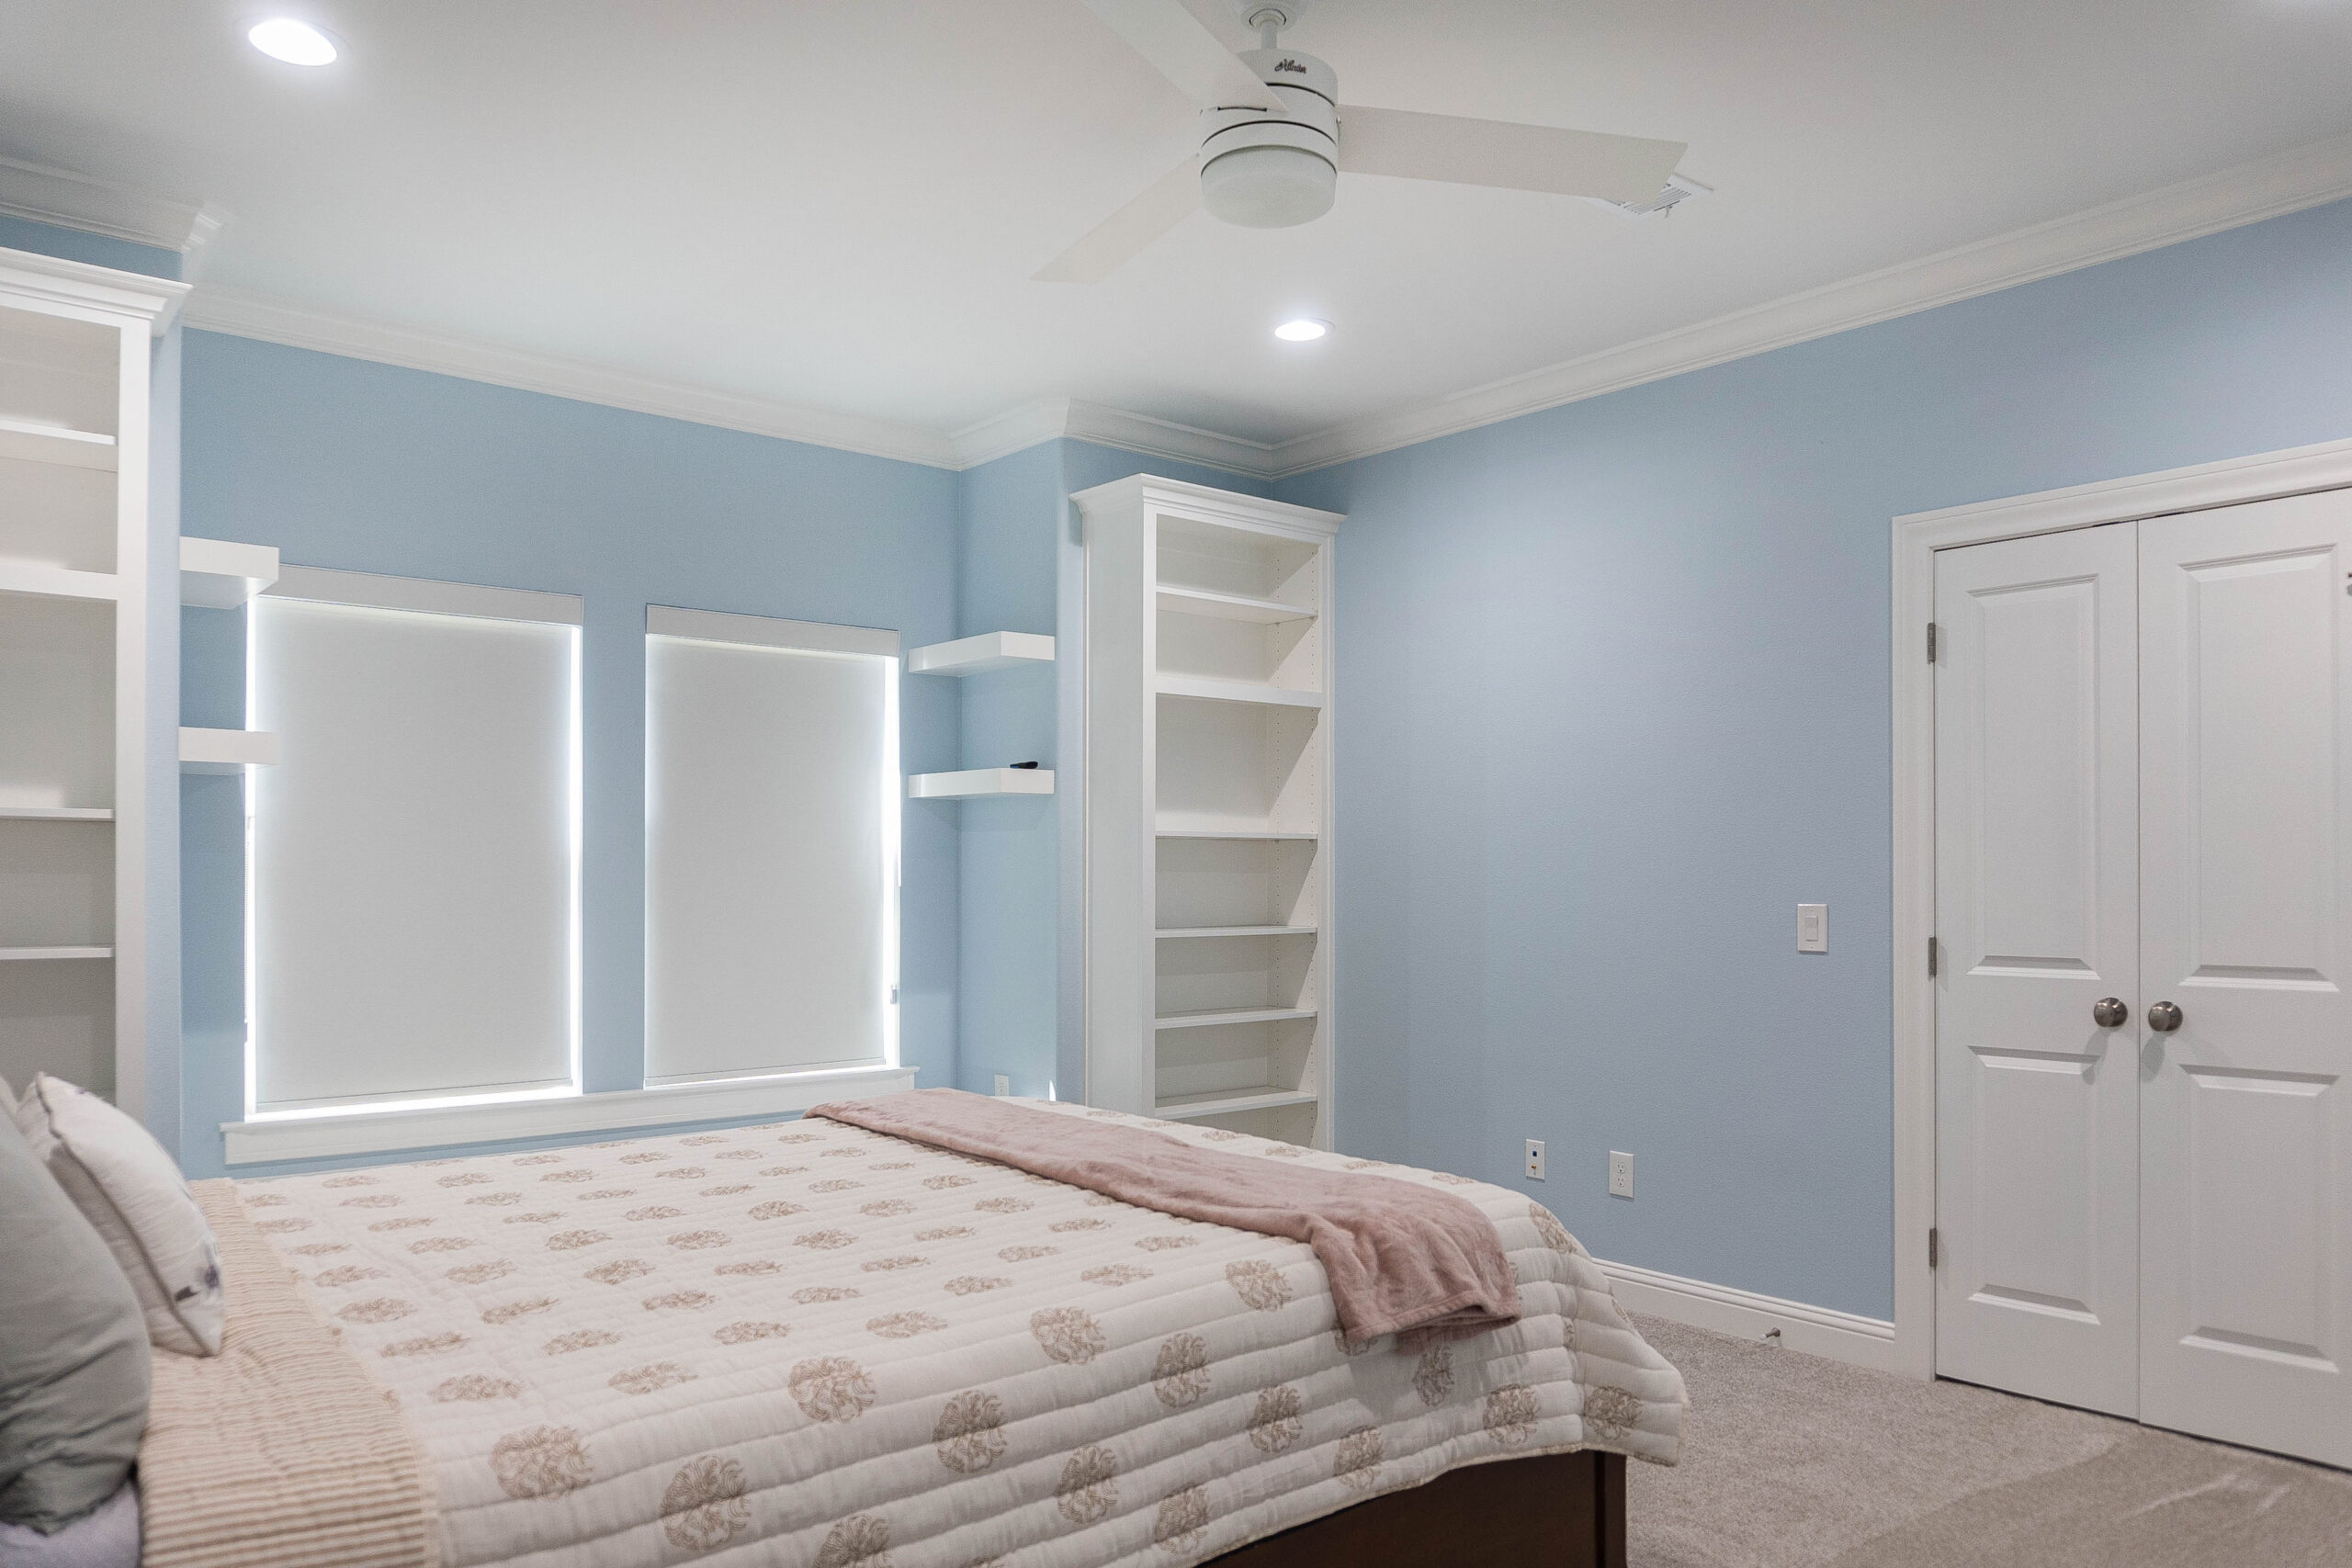 Esplanade bedroom modern home tan carpet blue walls built in bookshelves white shaker cabinet window stool